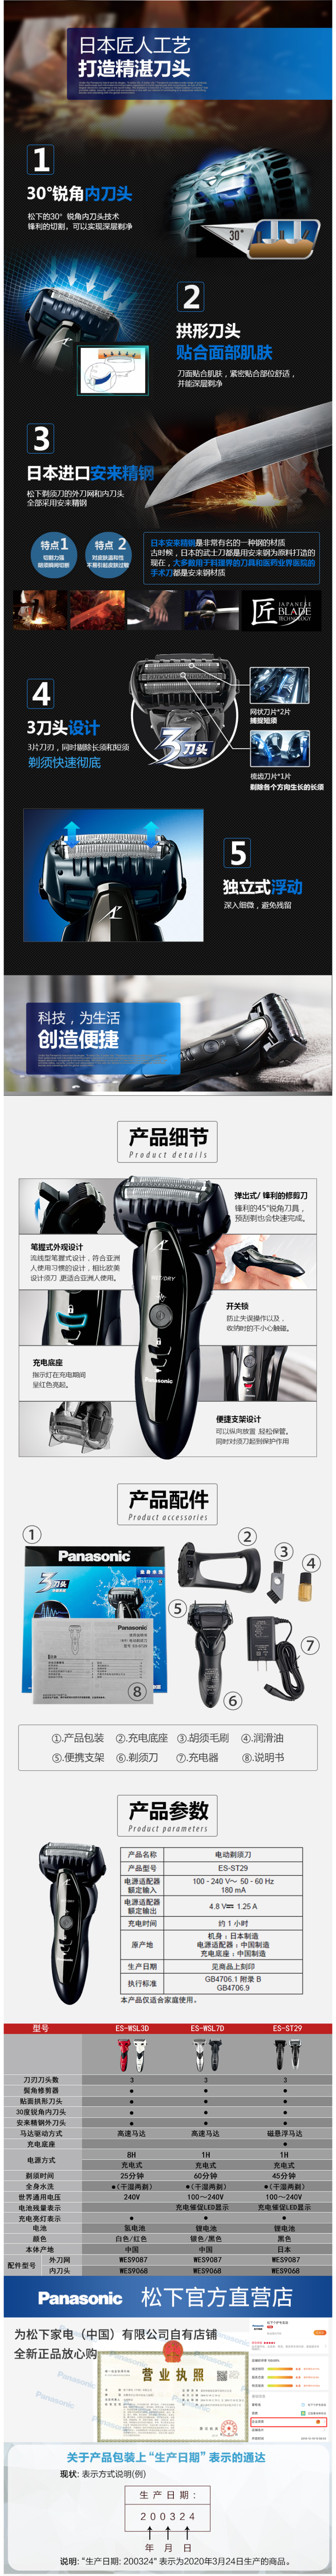 日本原装进口 松下 主力热销款 ST29 往复式电动剃须刀 日本安莱钢 图3